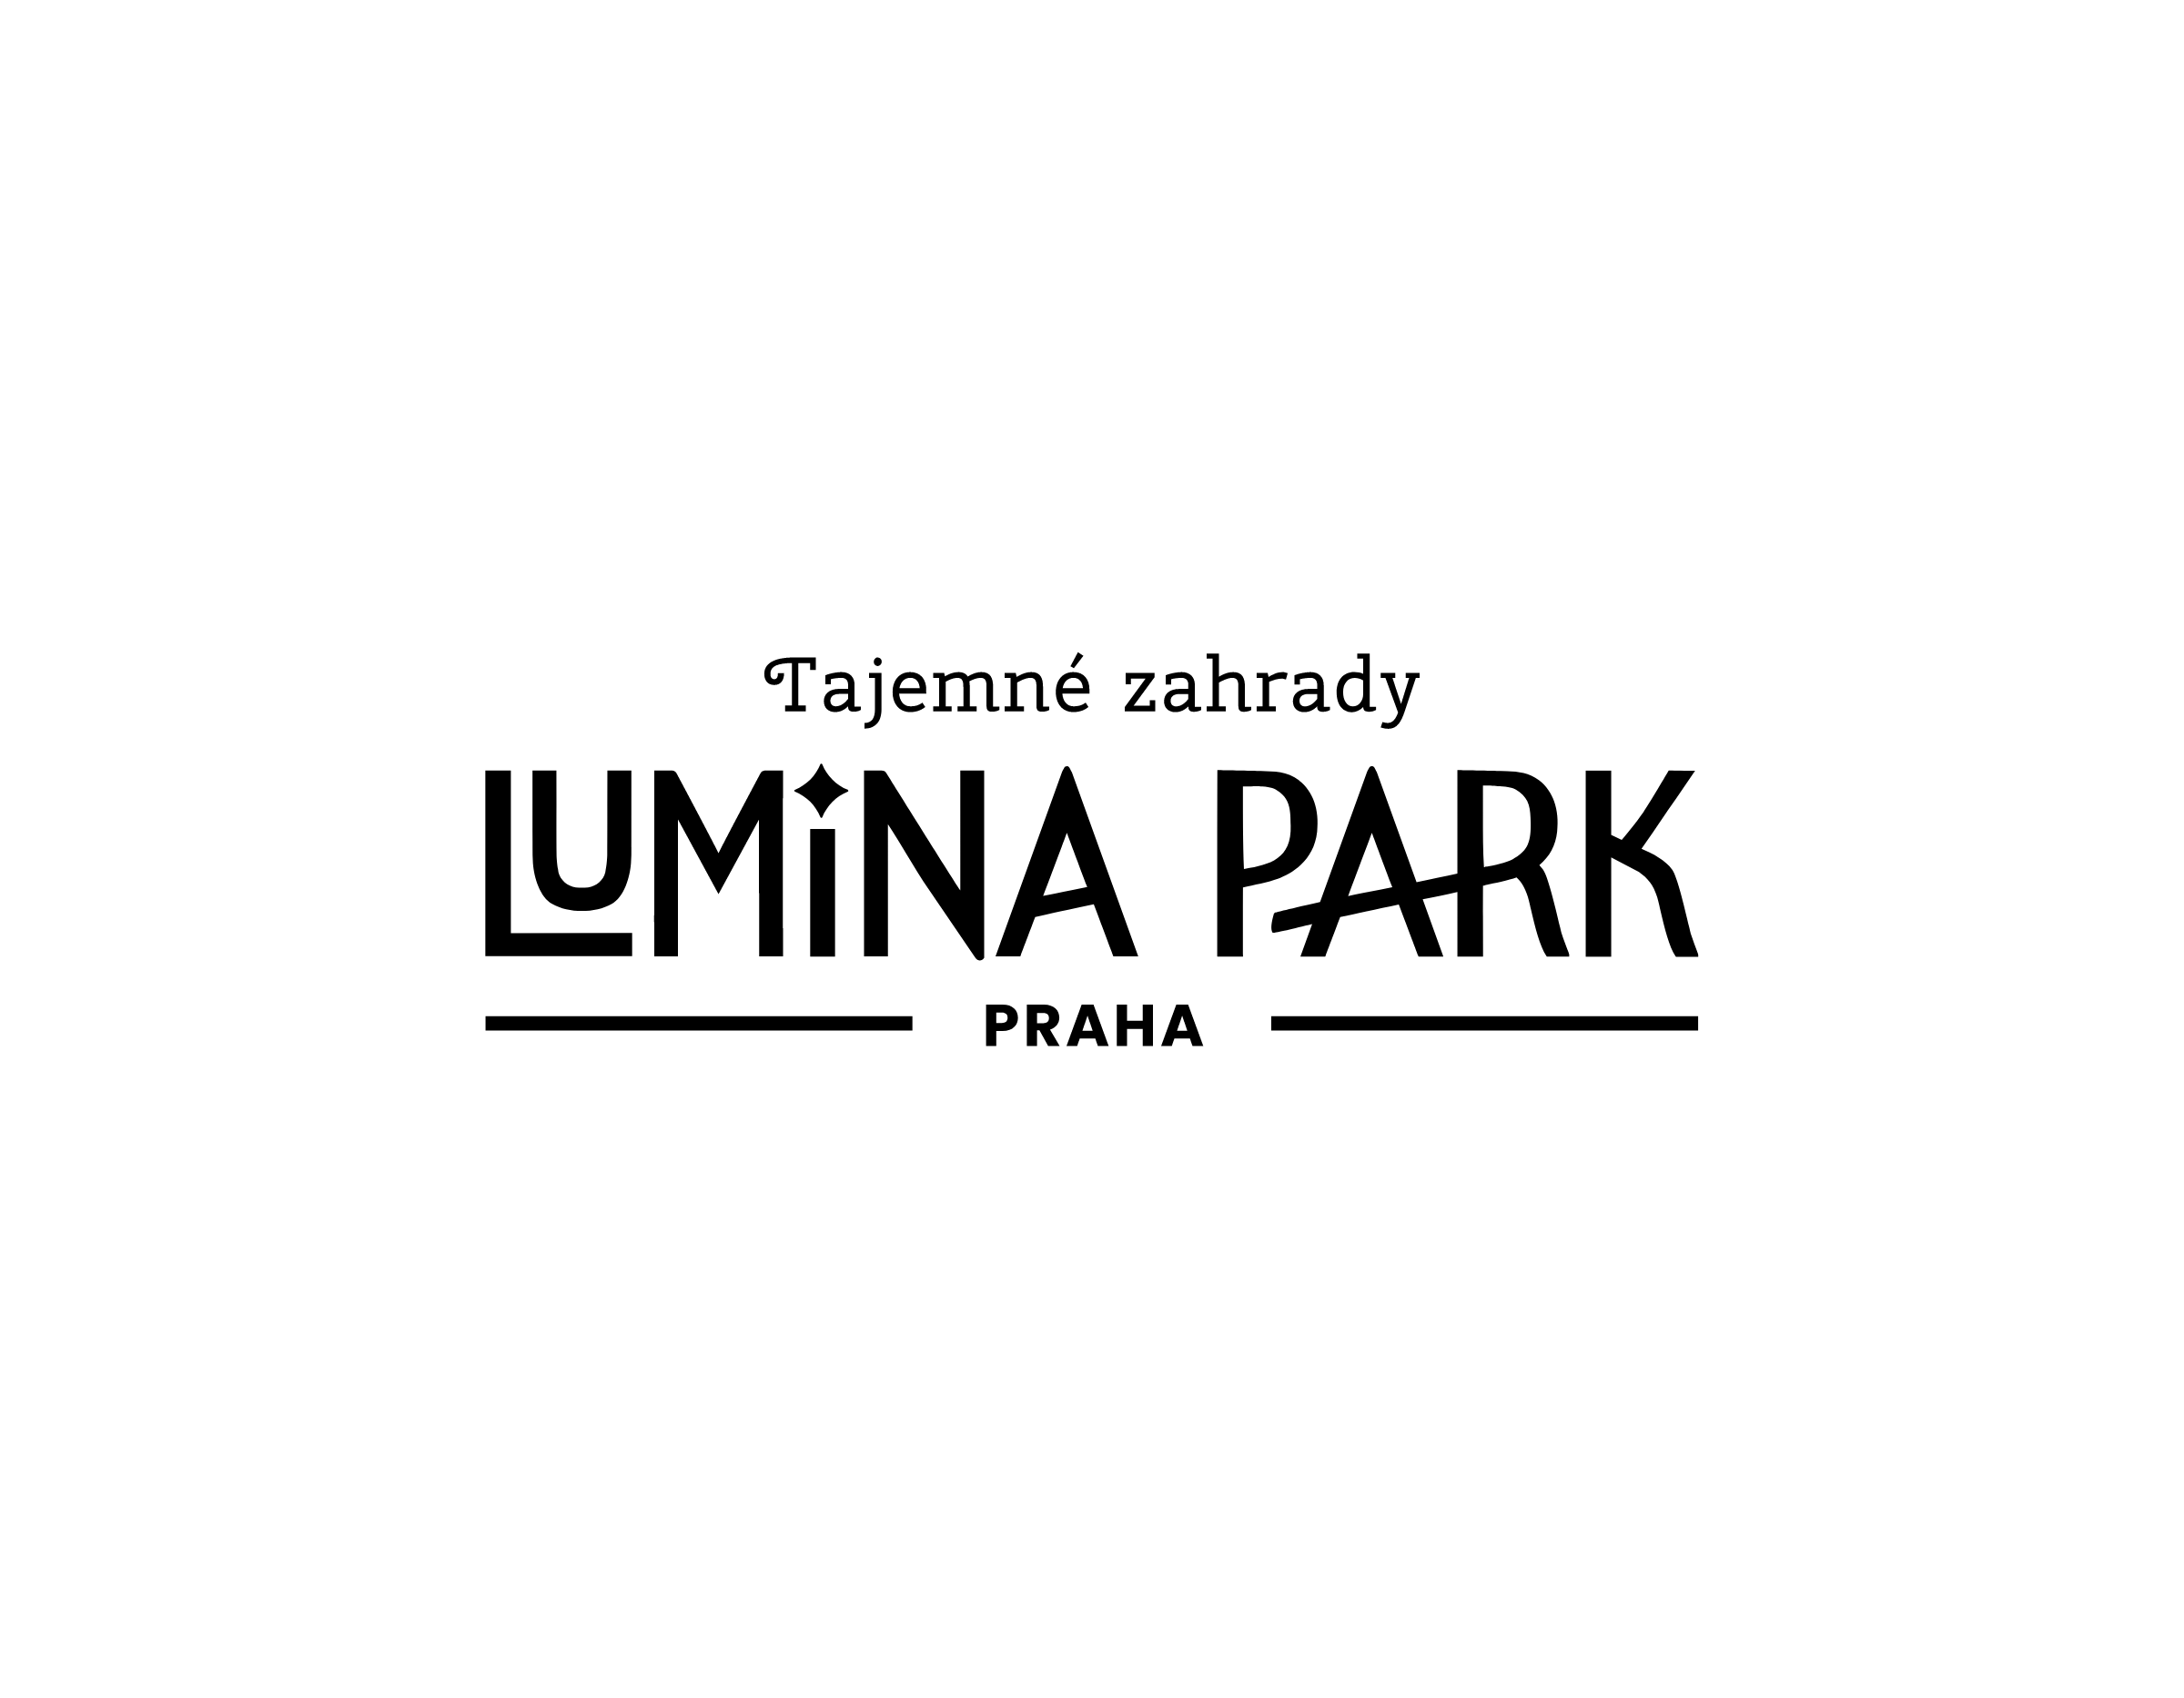 Lumina Park Prague